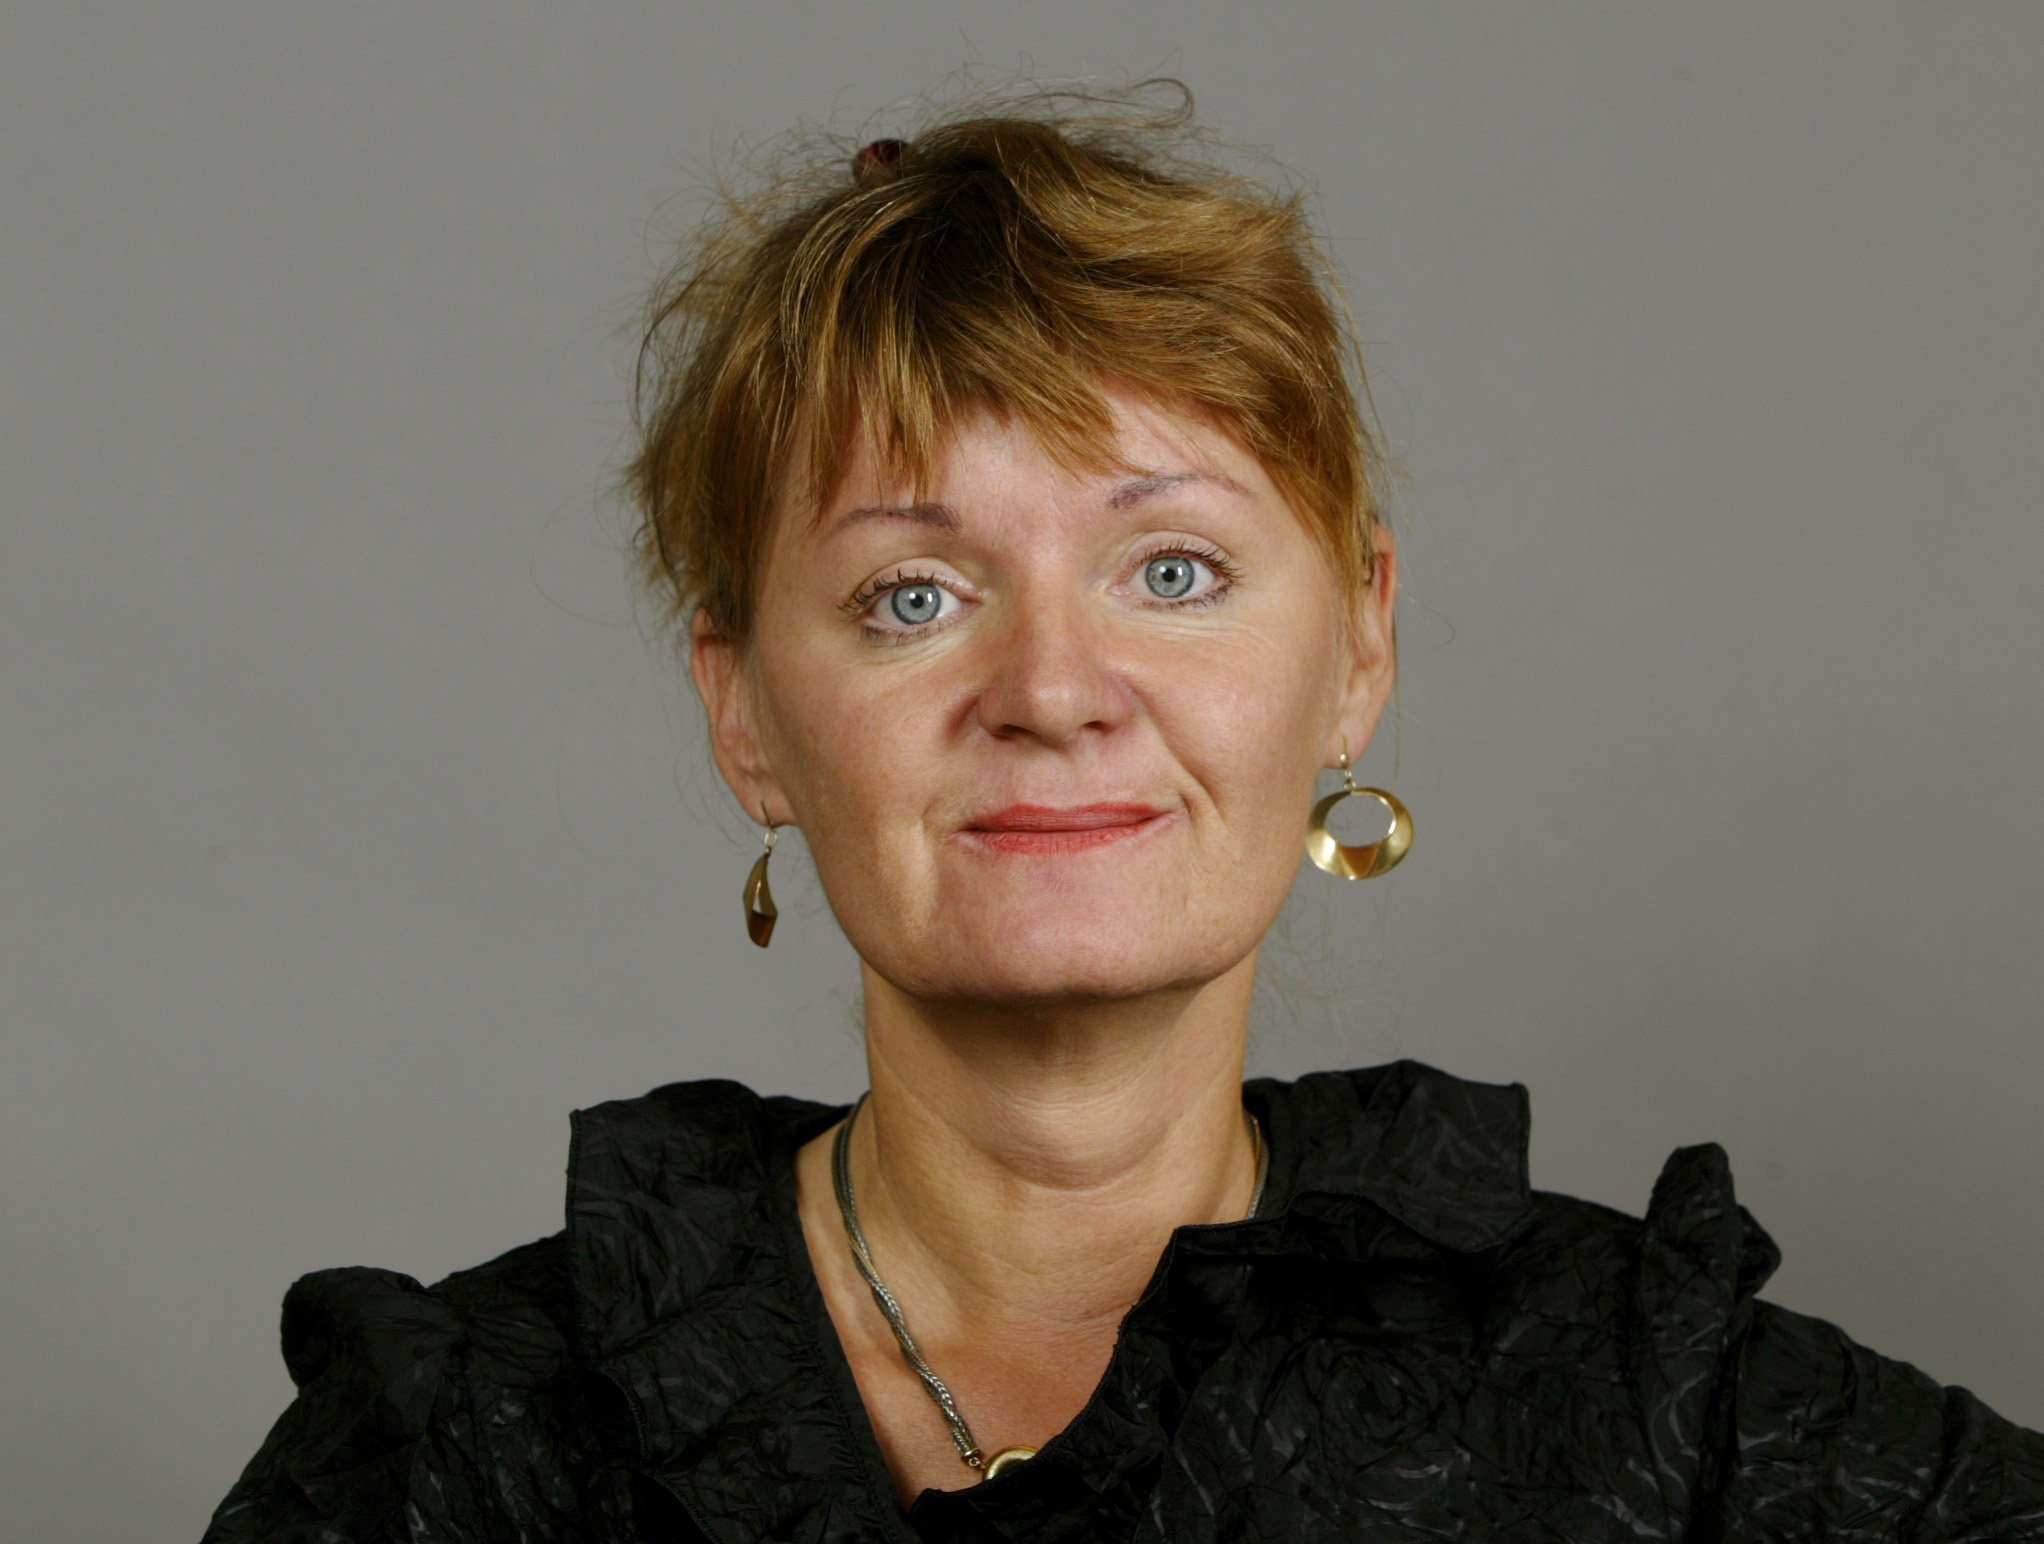 Gudrun Schyman, Riksdagsvalet 2010, Carina Hägg, Feministiskt initiativ, Sverigedemokraterna, Alliansen, Feminism